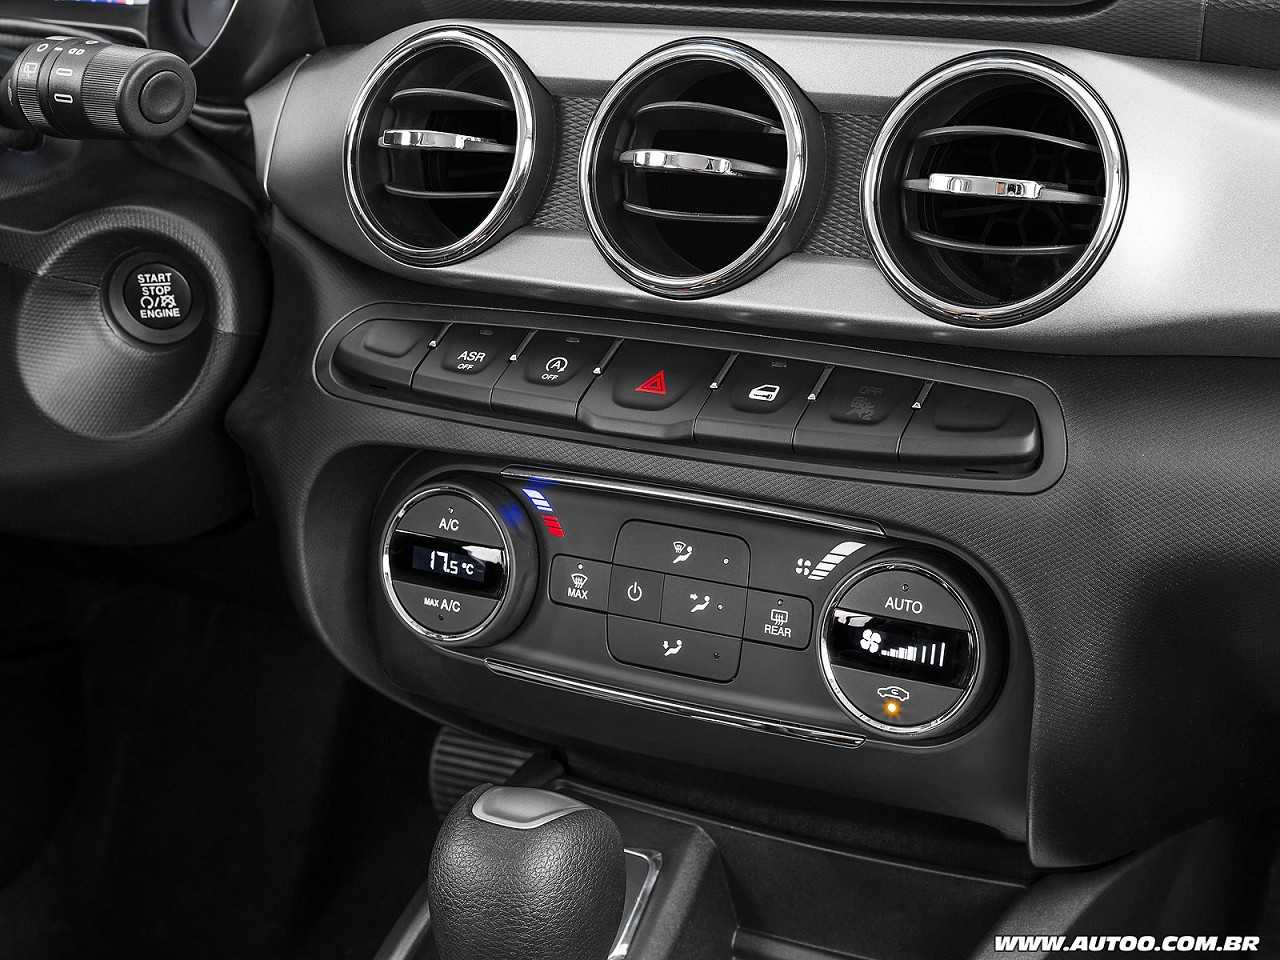 Compra PCD: Fiat Argo Precision automático ou um Honda Fit Personal?